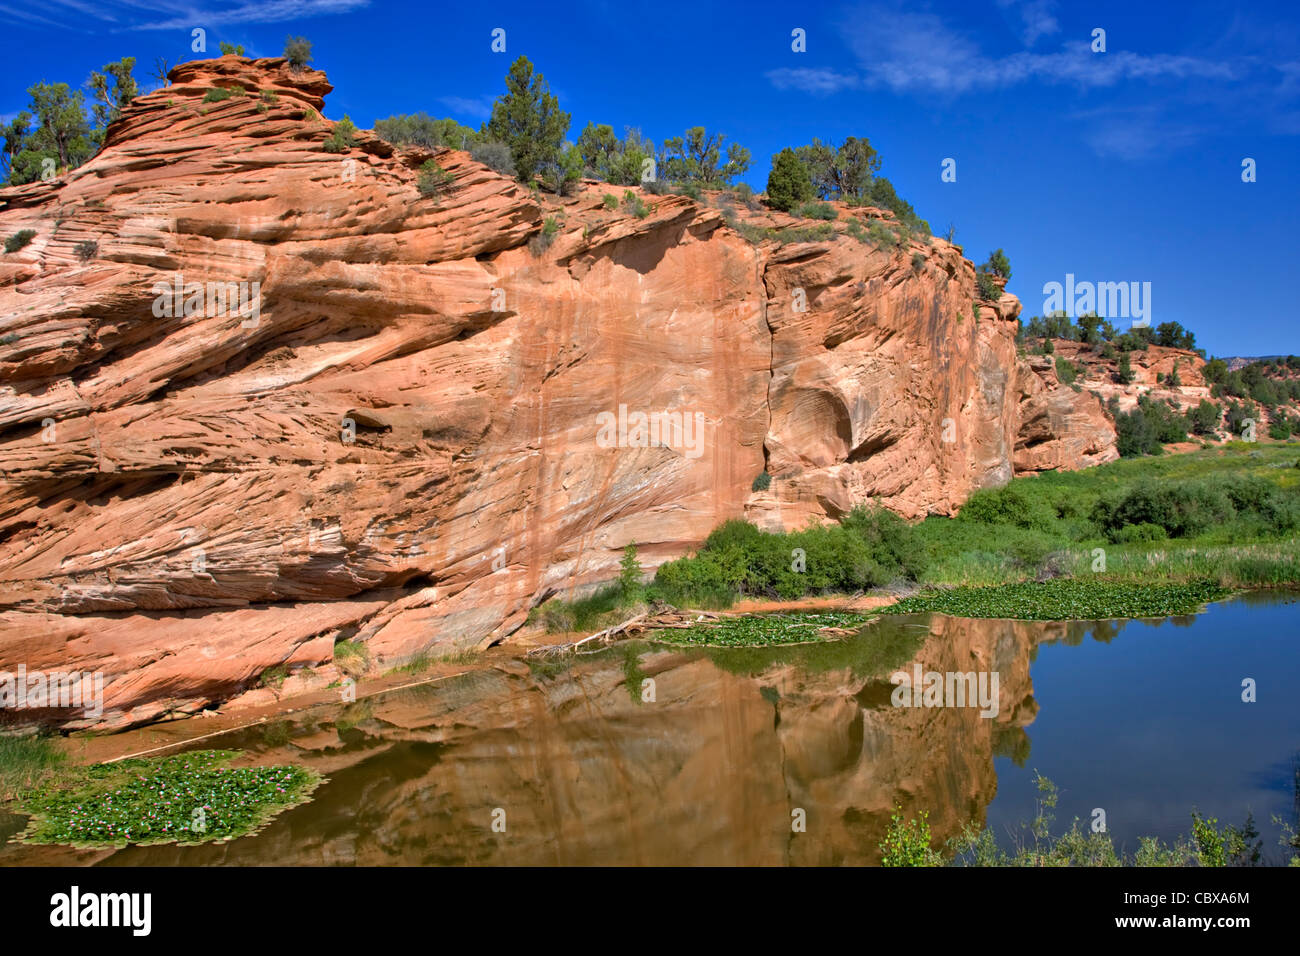 Une formation rocheuse de grès rouge se reflète dans les eaux calmes d'un étang sur le plateau de Kaibab, Grand Canyon National Park Banque D'Images